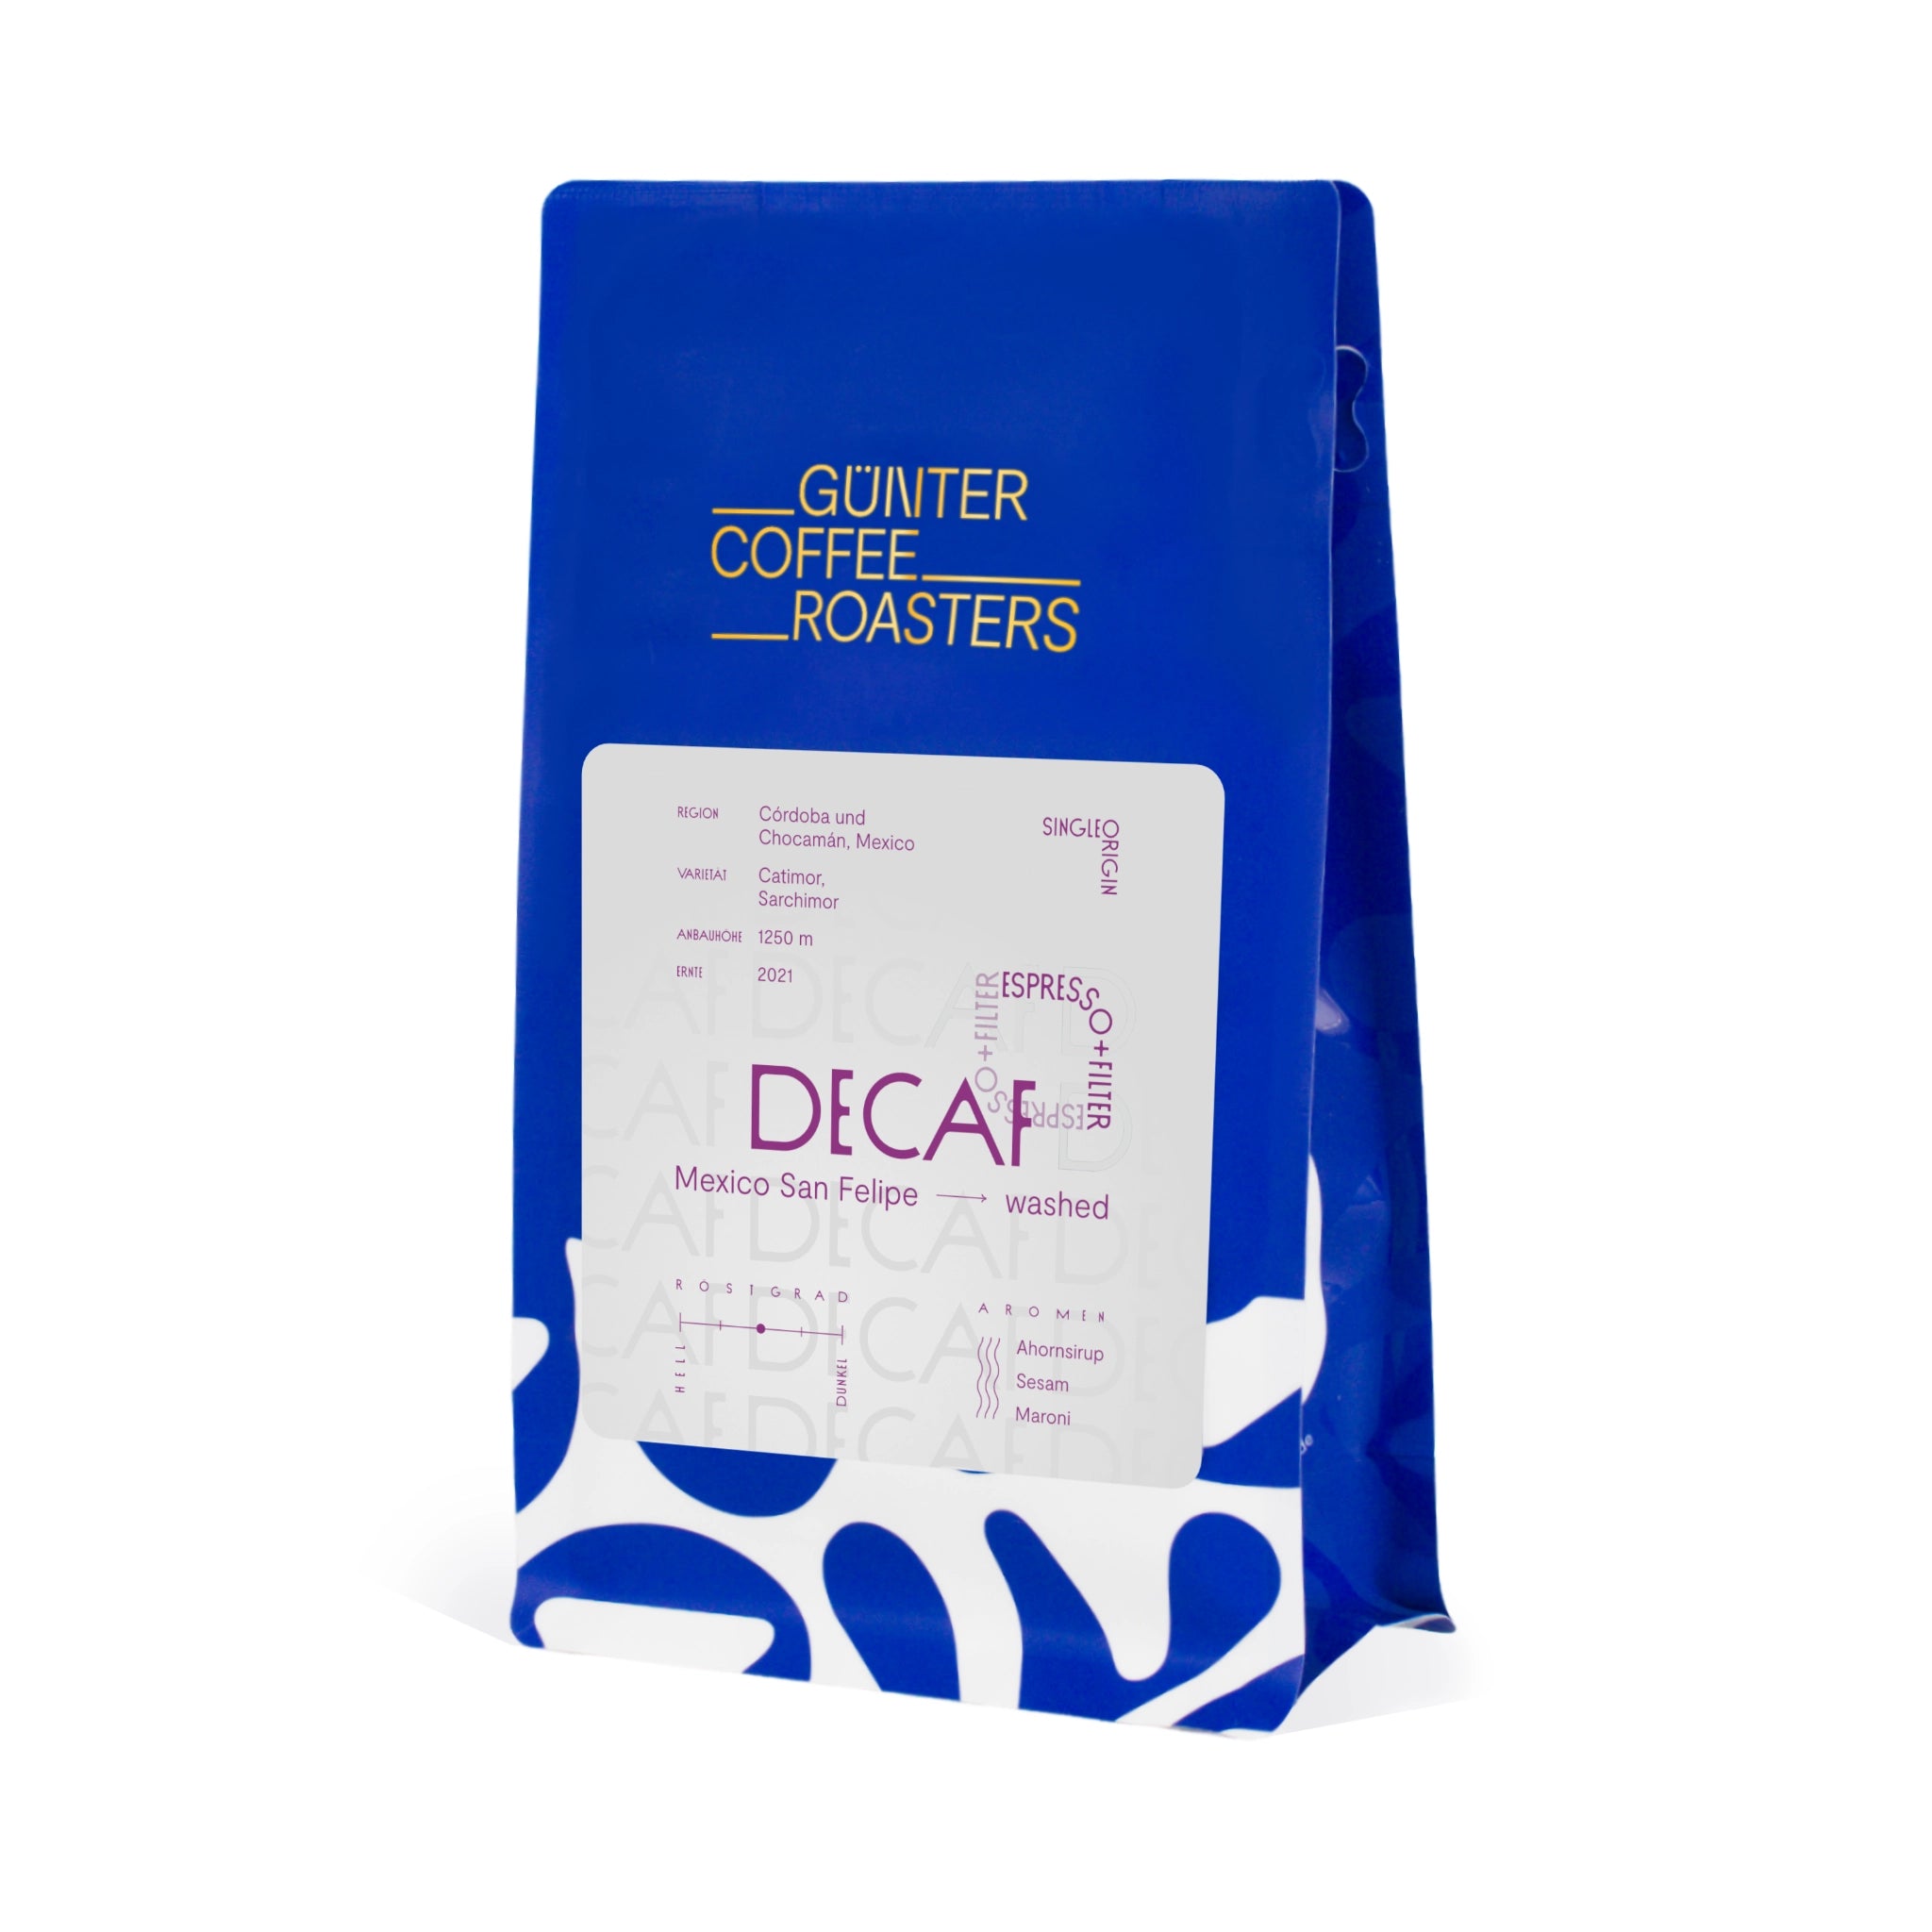 Produktverpackung Decaf Kaffeebohnen aus Mexiko für die Zubereitung als Filterkaffee oder Espresso. Noten von Ahornsirup, Sesam und Maroni. Röstgrad 3 von 5. Gewaschen aufbereiteter sortenreiner Arabica-Kaffee der Varietäten Catimor und Sarchimor.